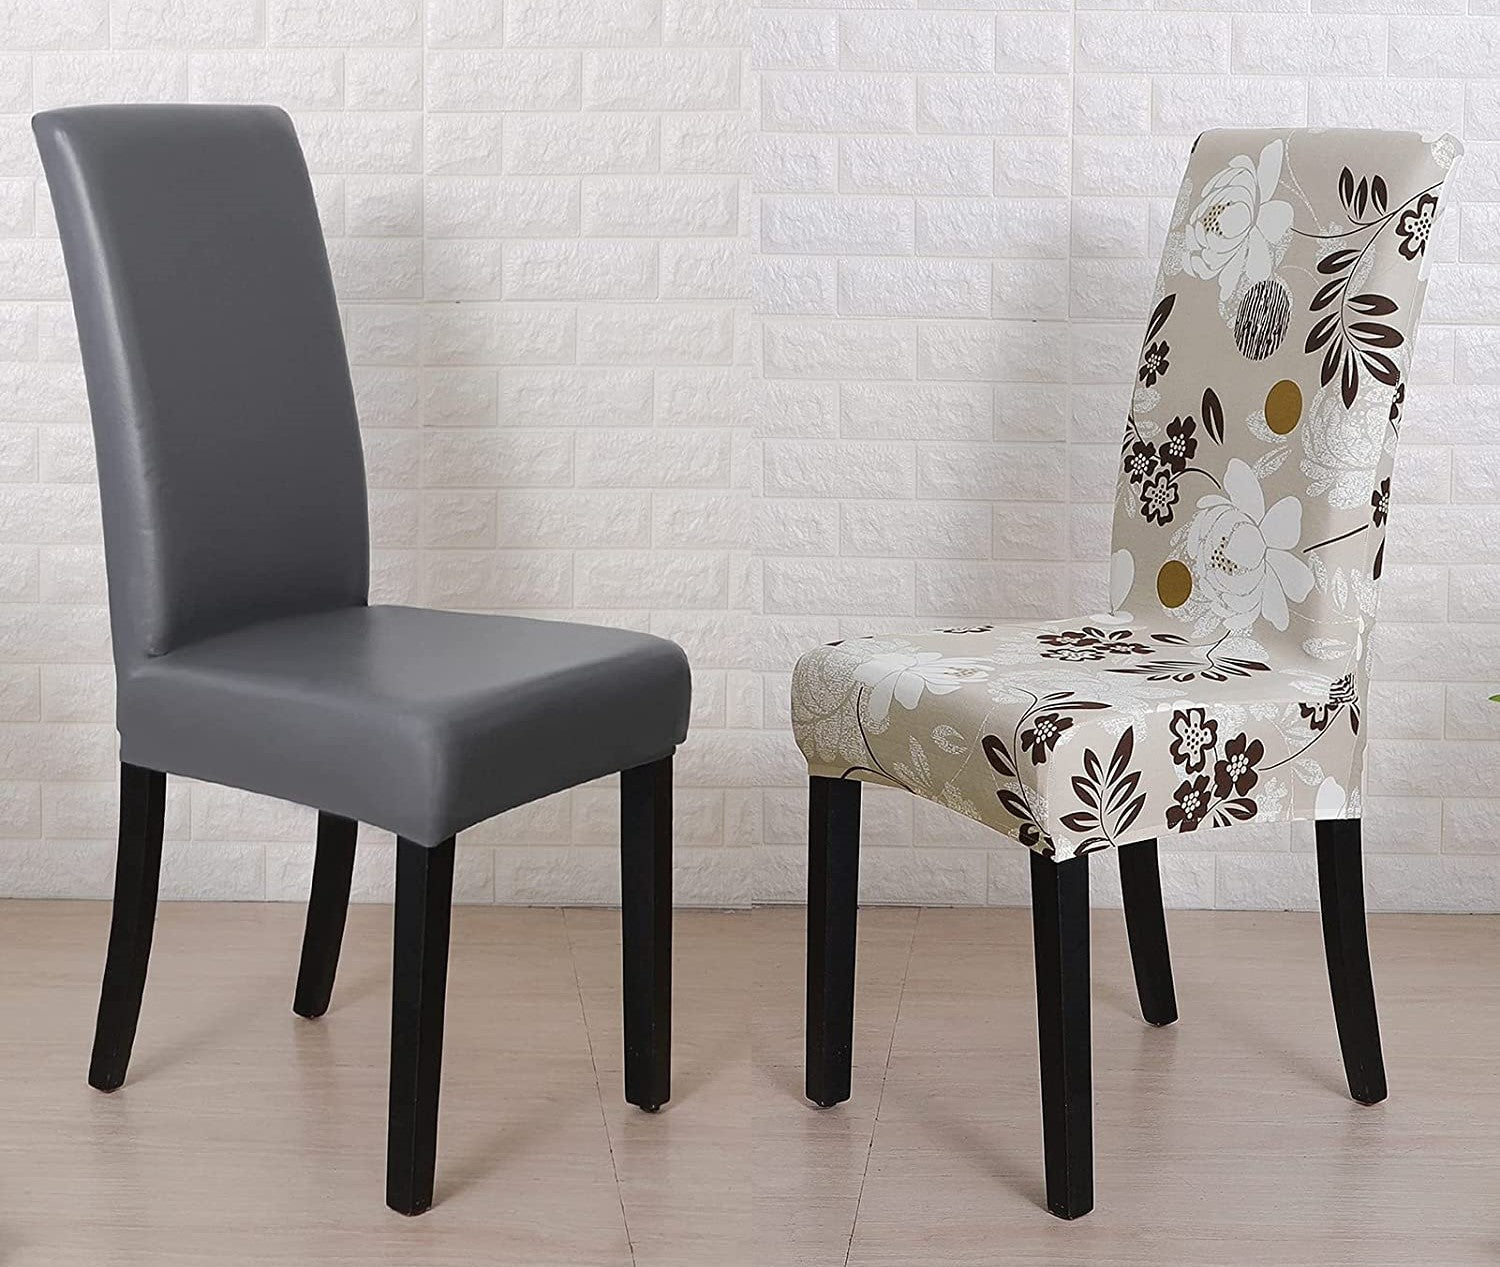 Polideia comprar melhor capa de cadeira de janta estampada capa elastica para cadeira qualidade premium barato